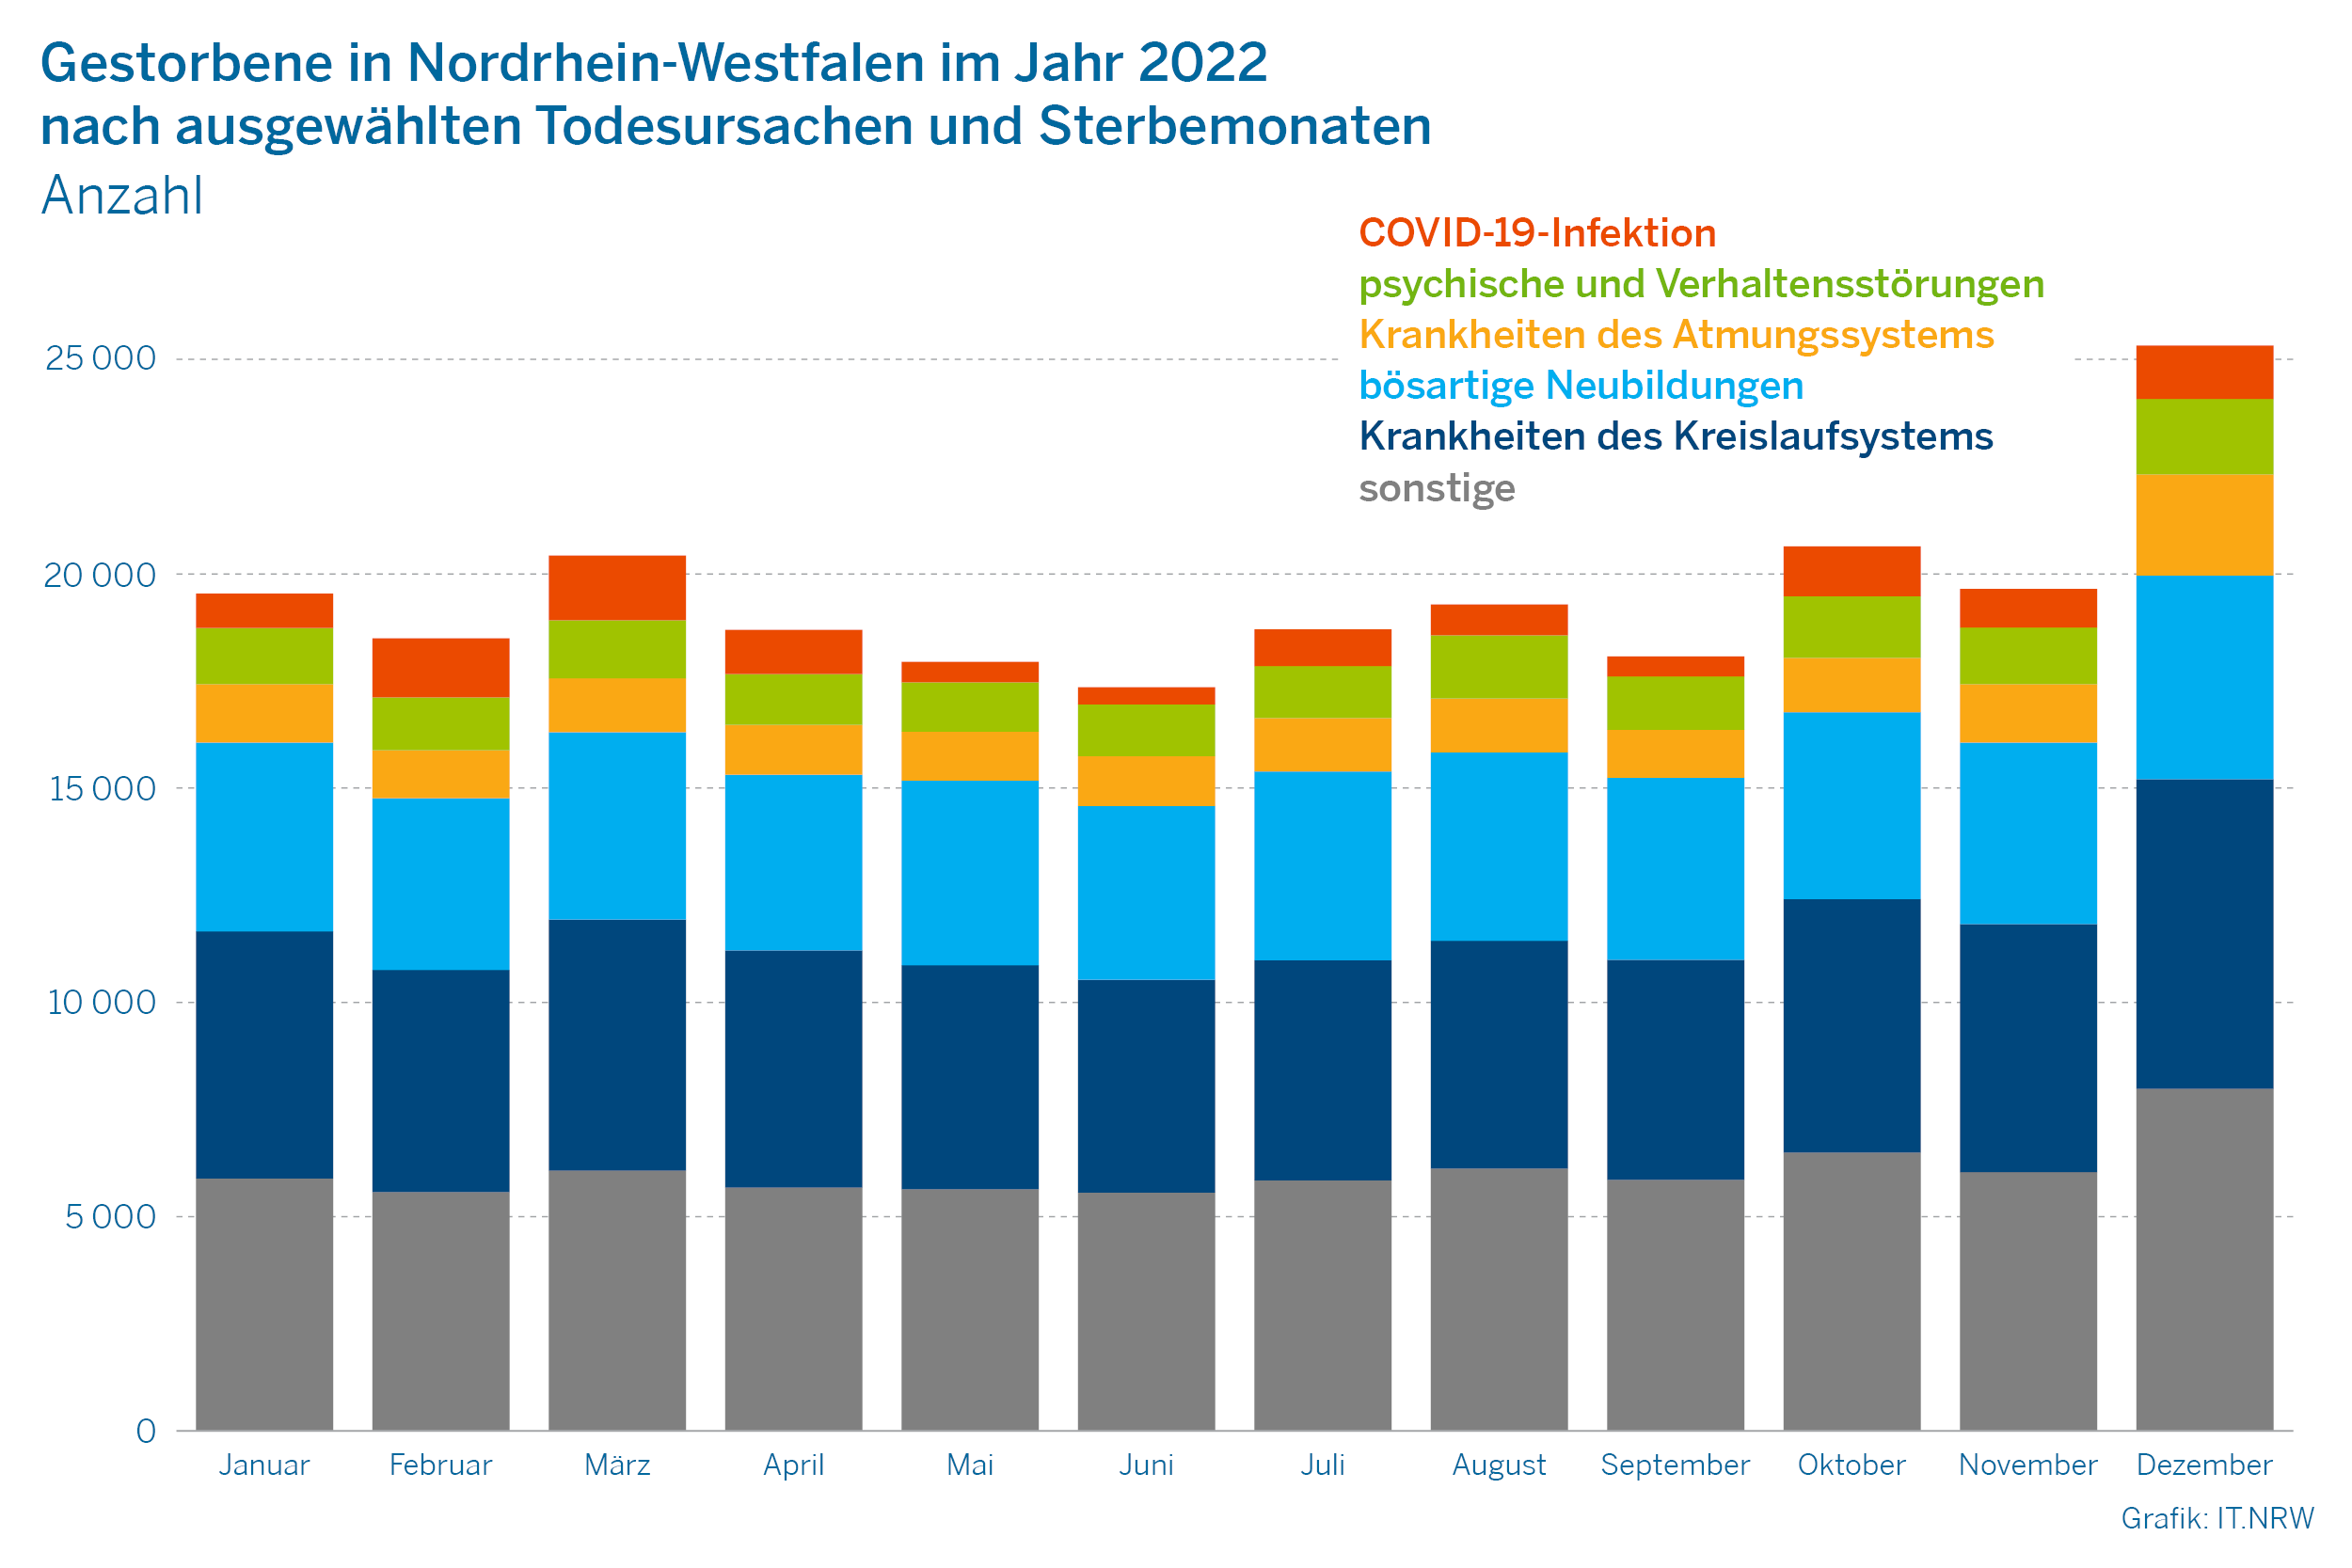 Gestorbene in Nordrhein-Westfalen im Jahr 2022 nach ausgewählten Todesursachen und Sterbemonaten